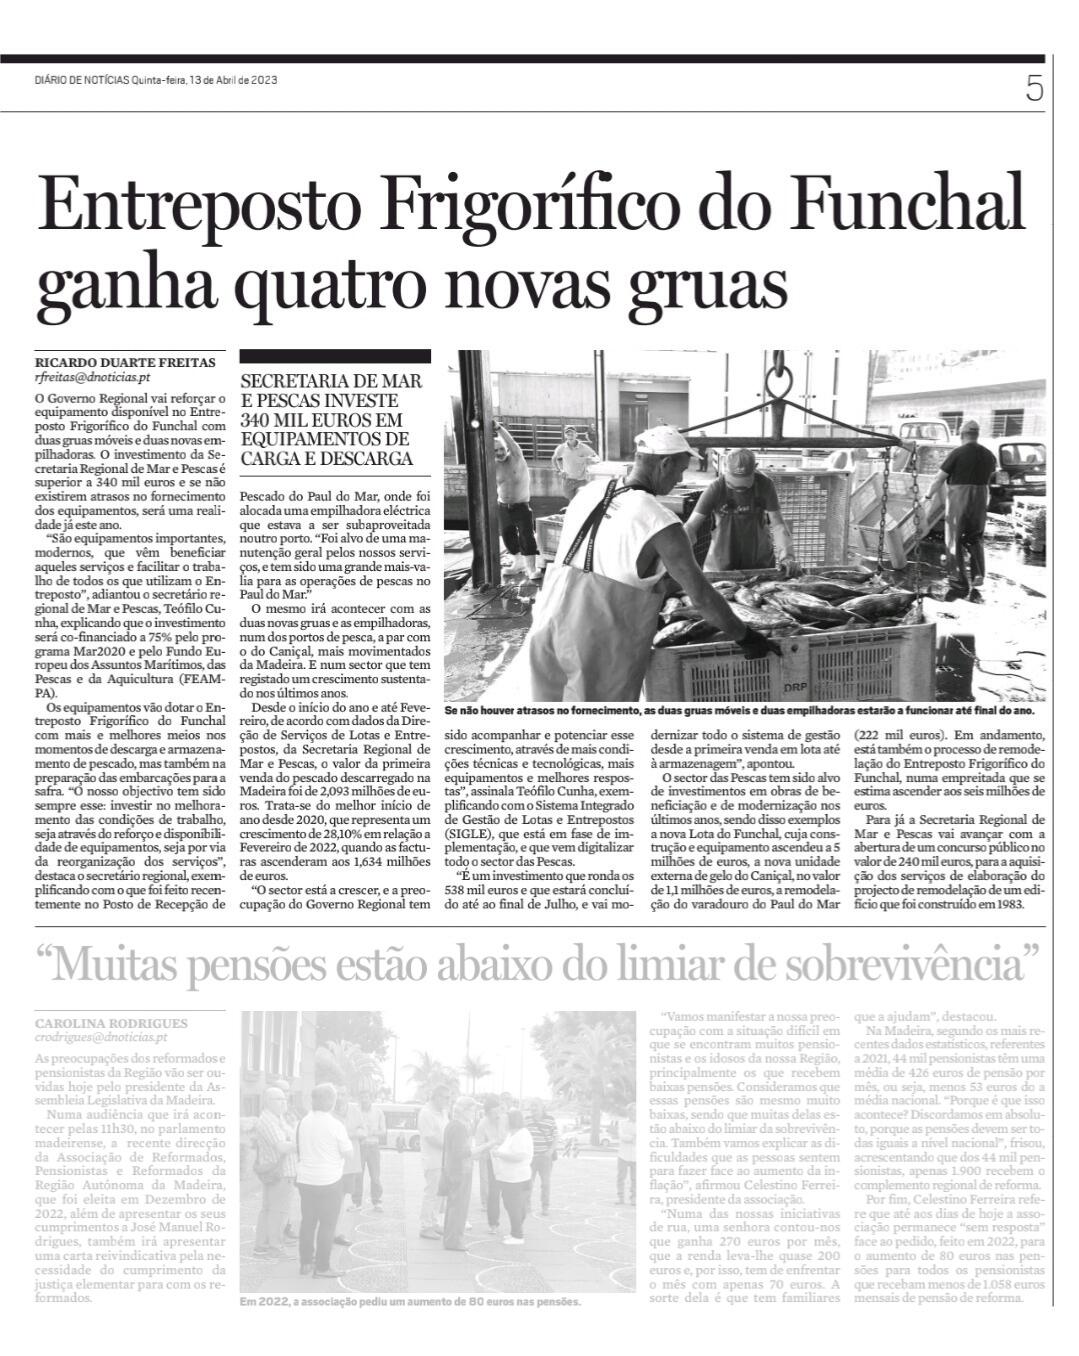 Entreposto Frigorífico do Funchal ganha quatro novas gruas